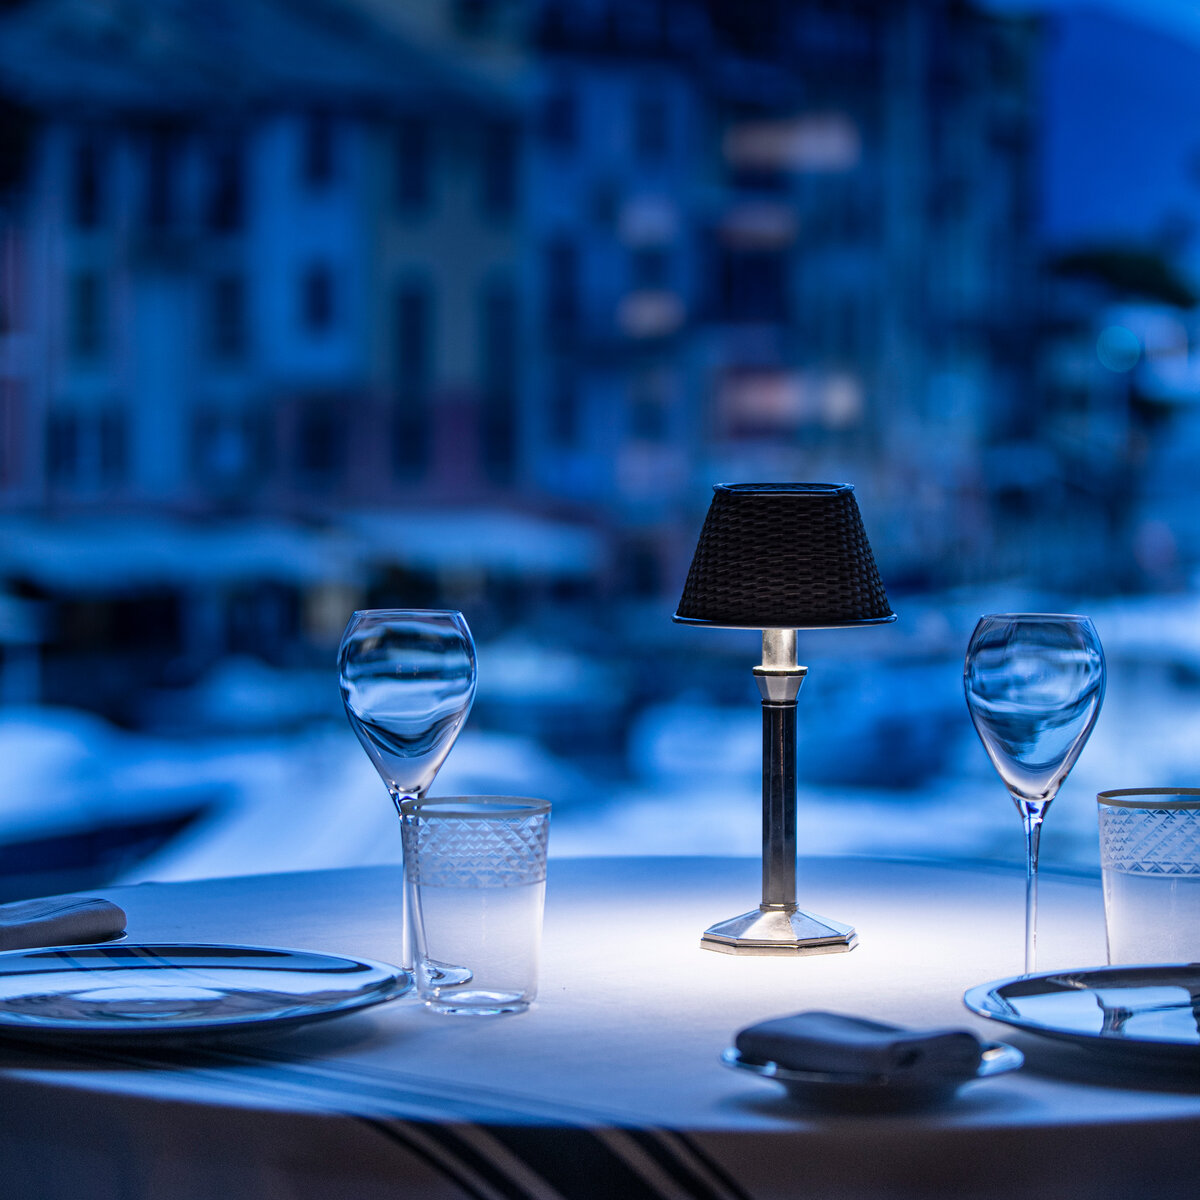 Cracco Portofino 餐馆 | © Davide Groppi srl | All Rights Reserved